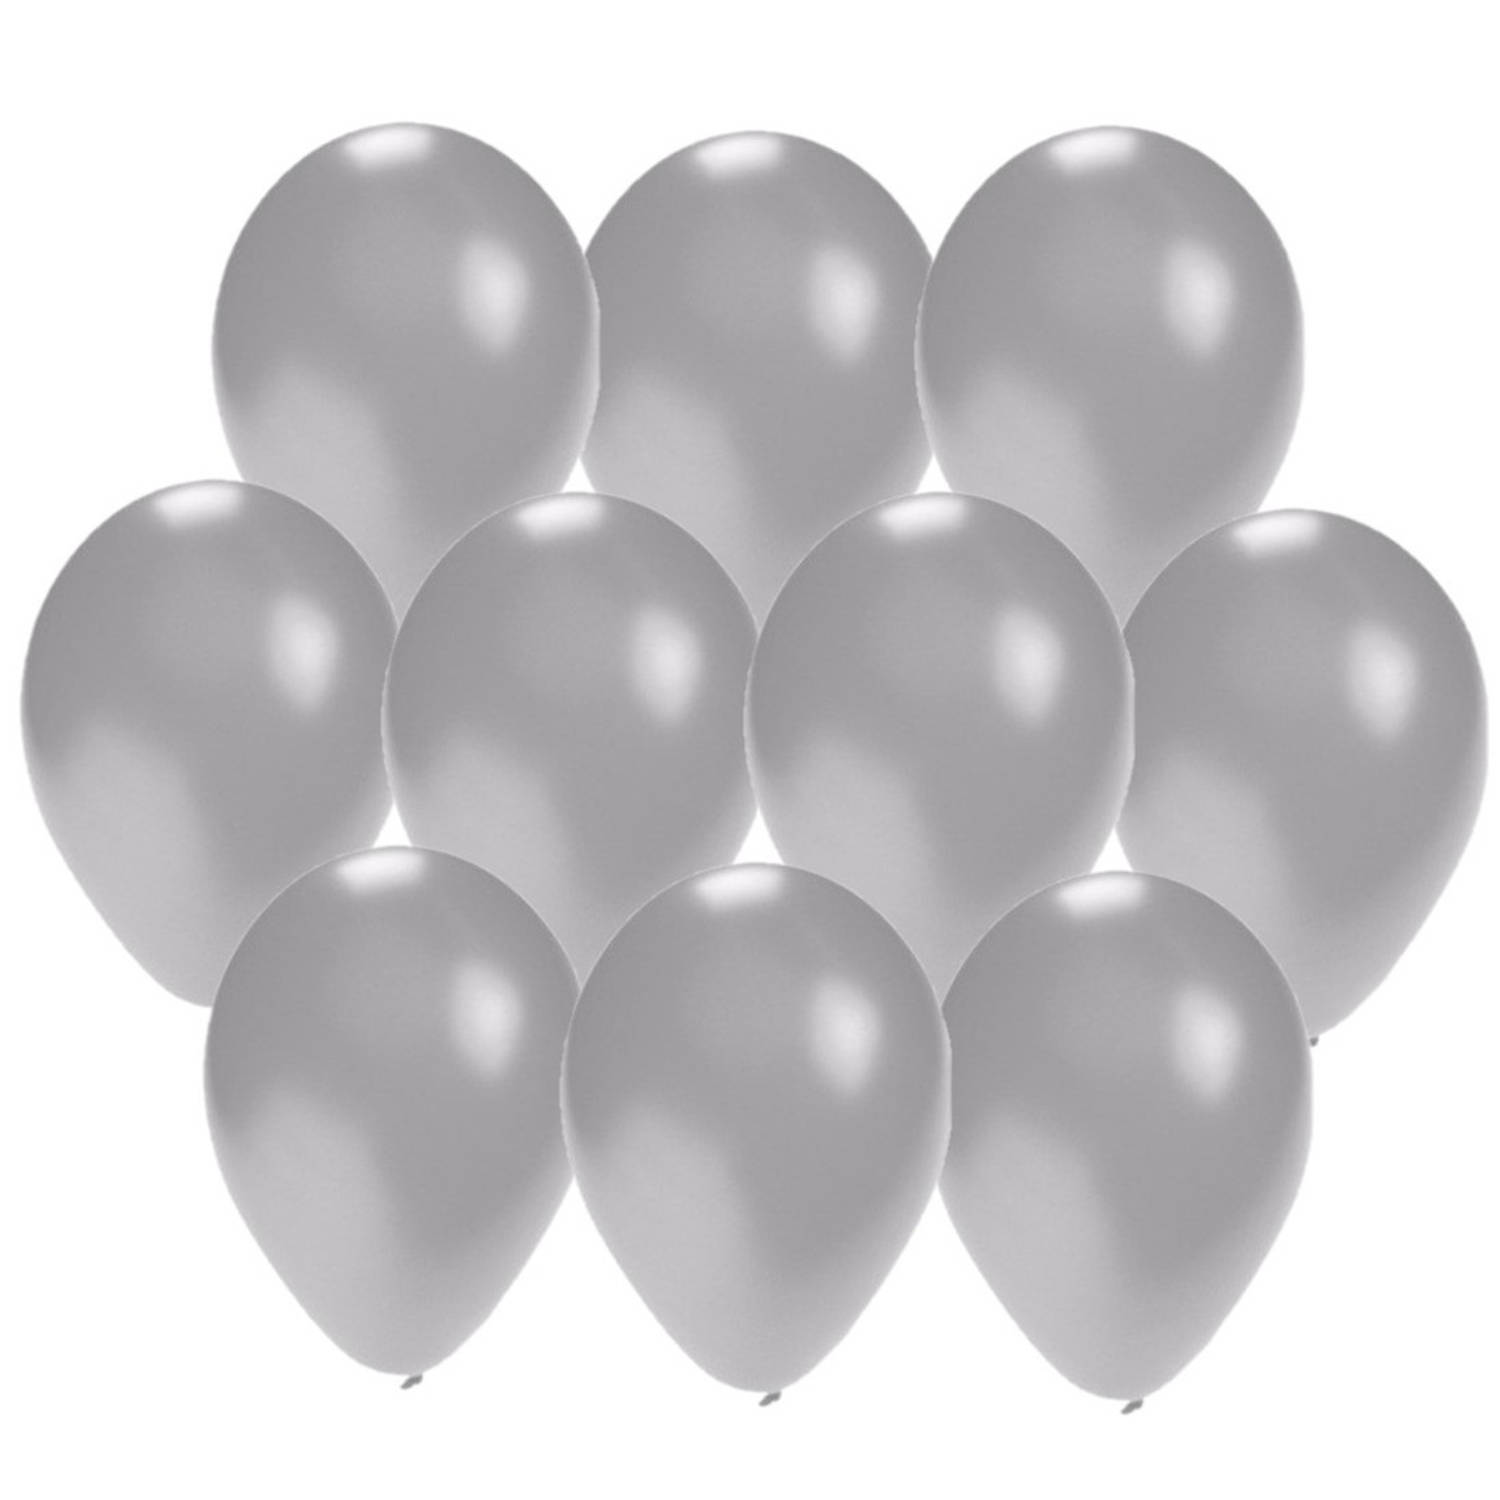 30x stuks Zilveren party ballonnen 27 cm - Ballonnen